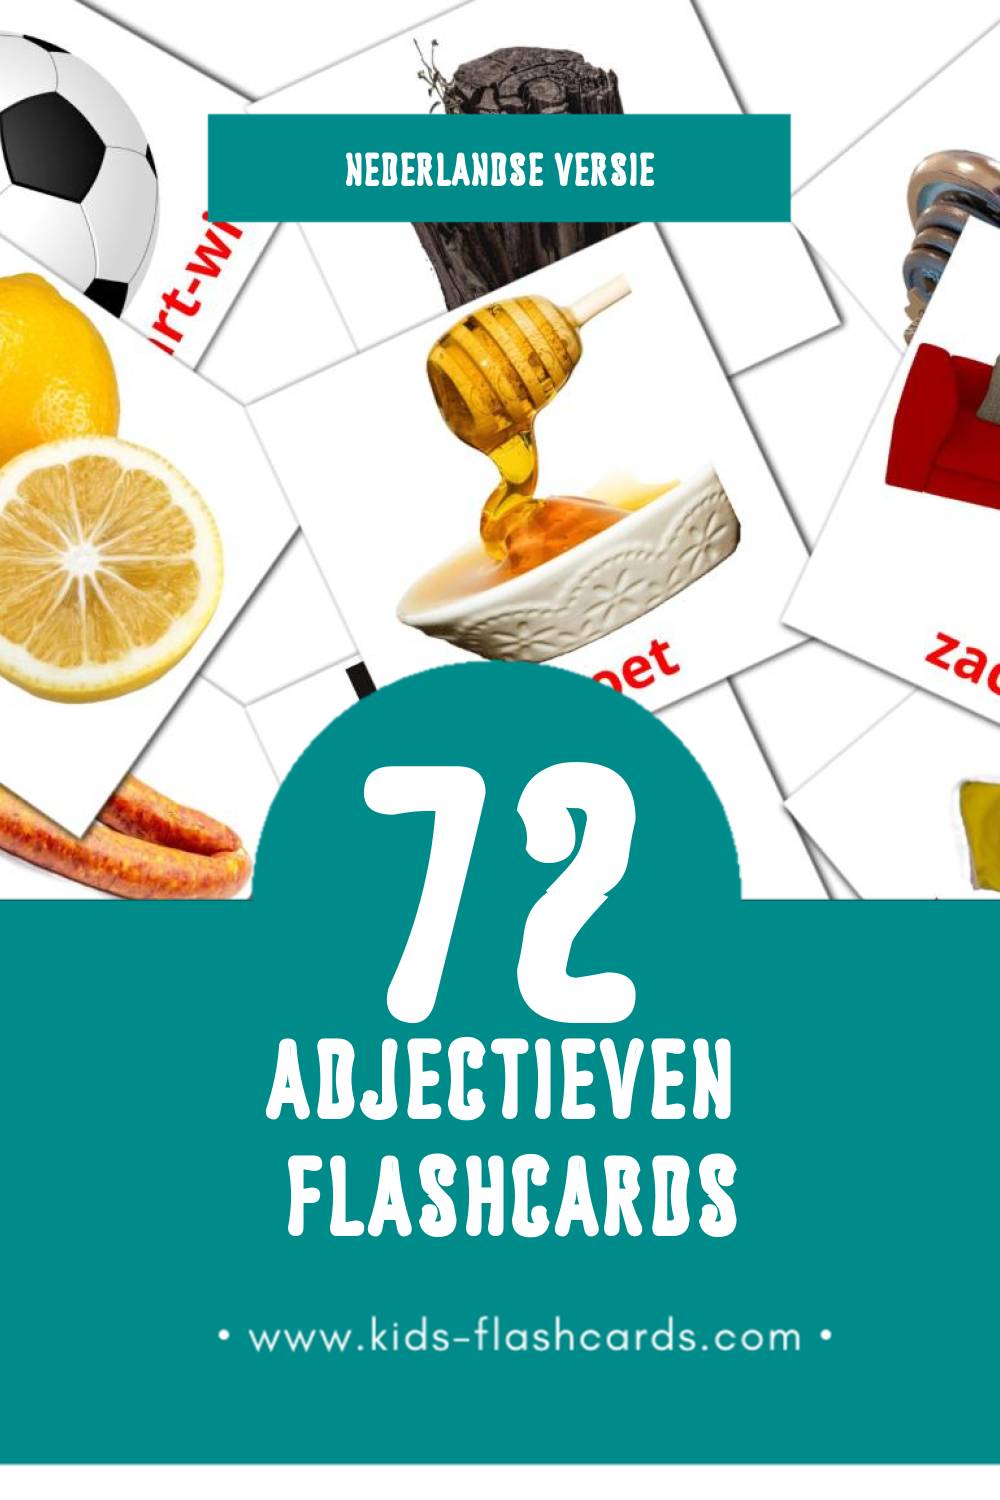 Visuele Adjectieven Flashcards voor Kleuters (72 kaarten in het Nederlands)